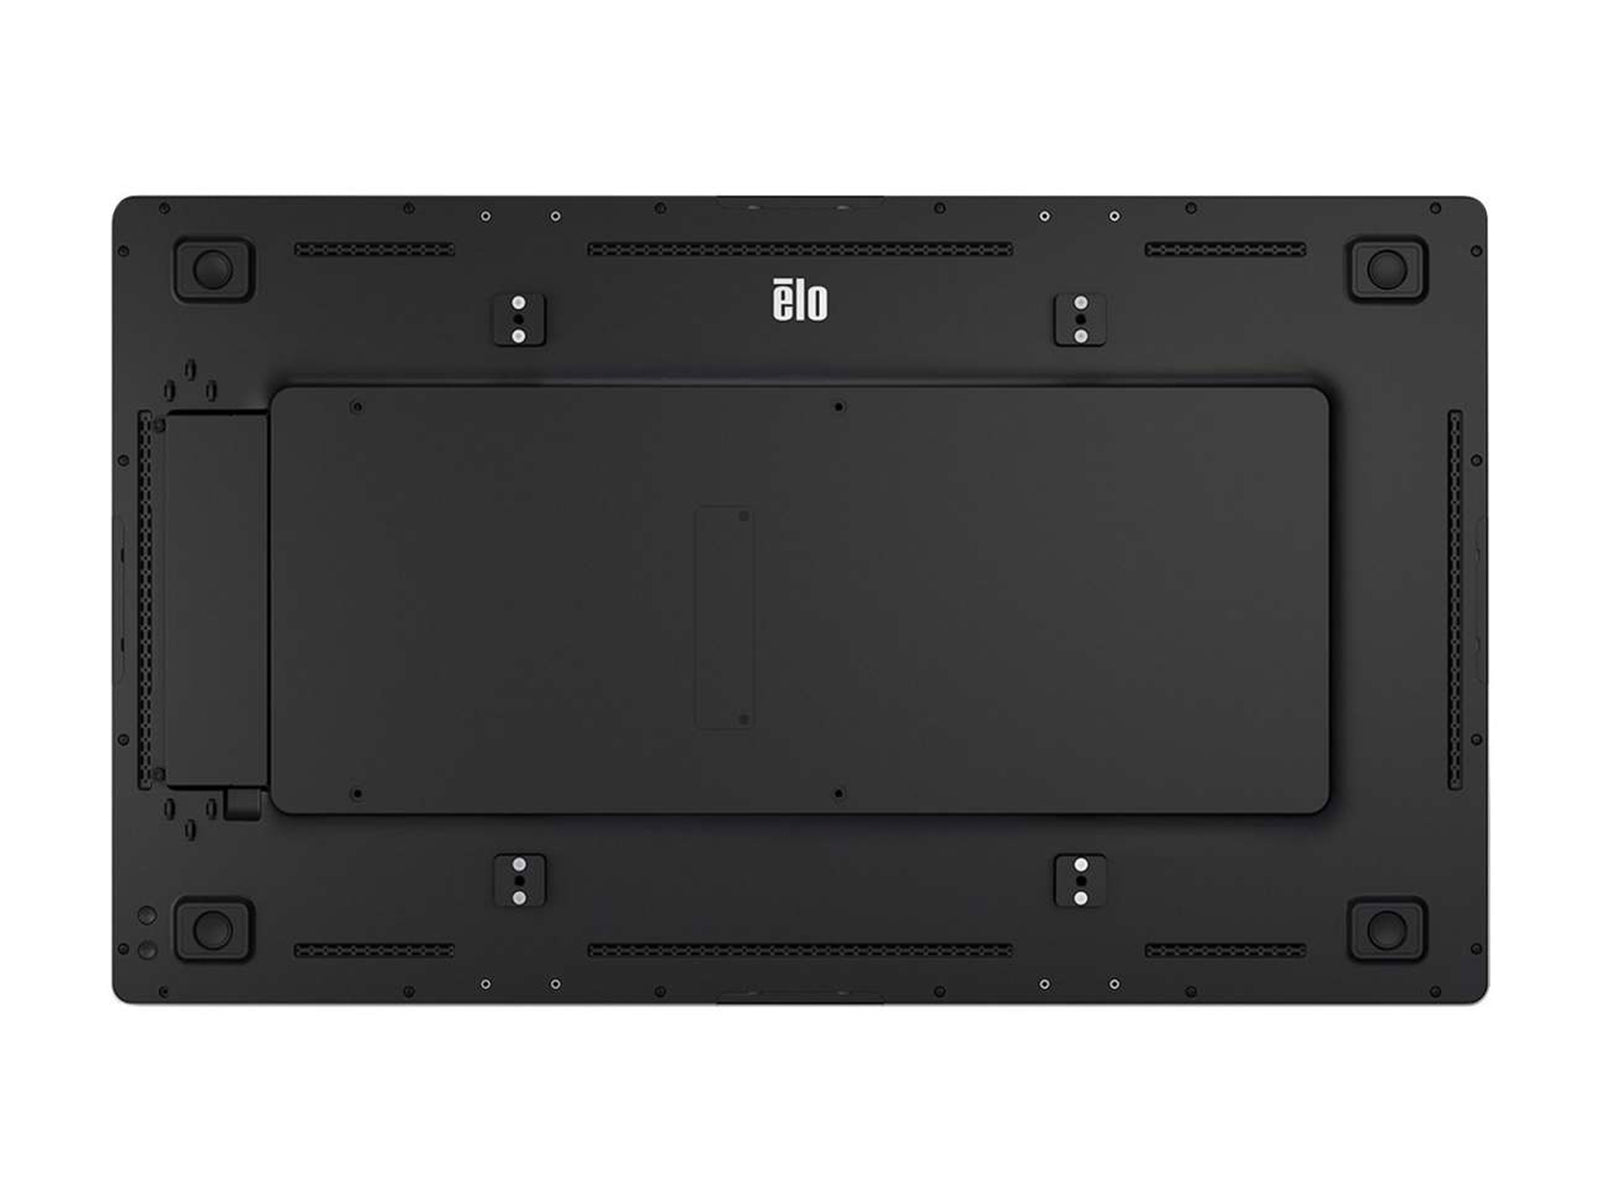 Elo 4202L デジタル サイネージ ディスプレイ 42 インチ 1080P タッチ (E222369)、Elo コンピューター モジュール (E401168 ) 付き